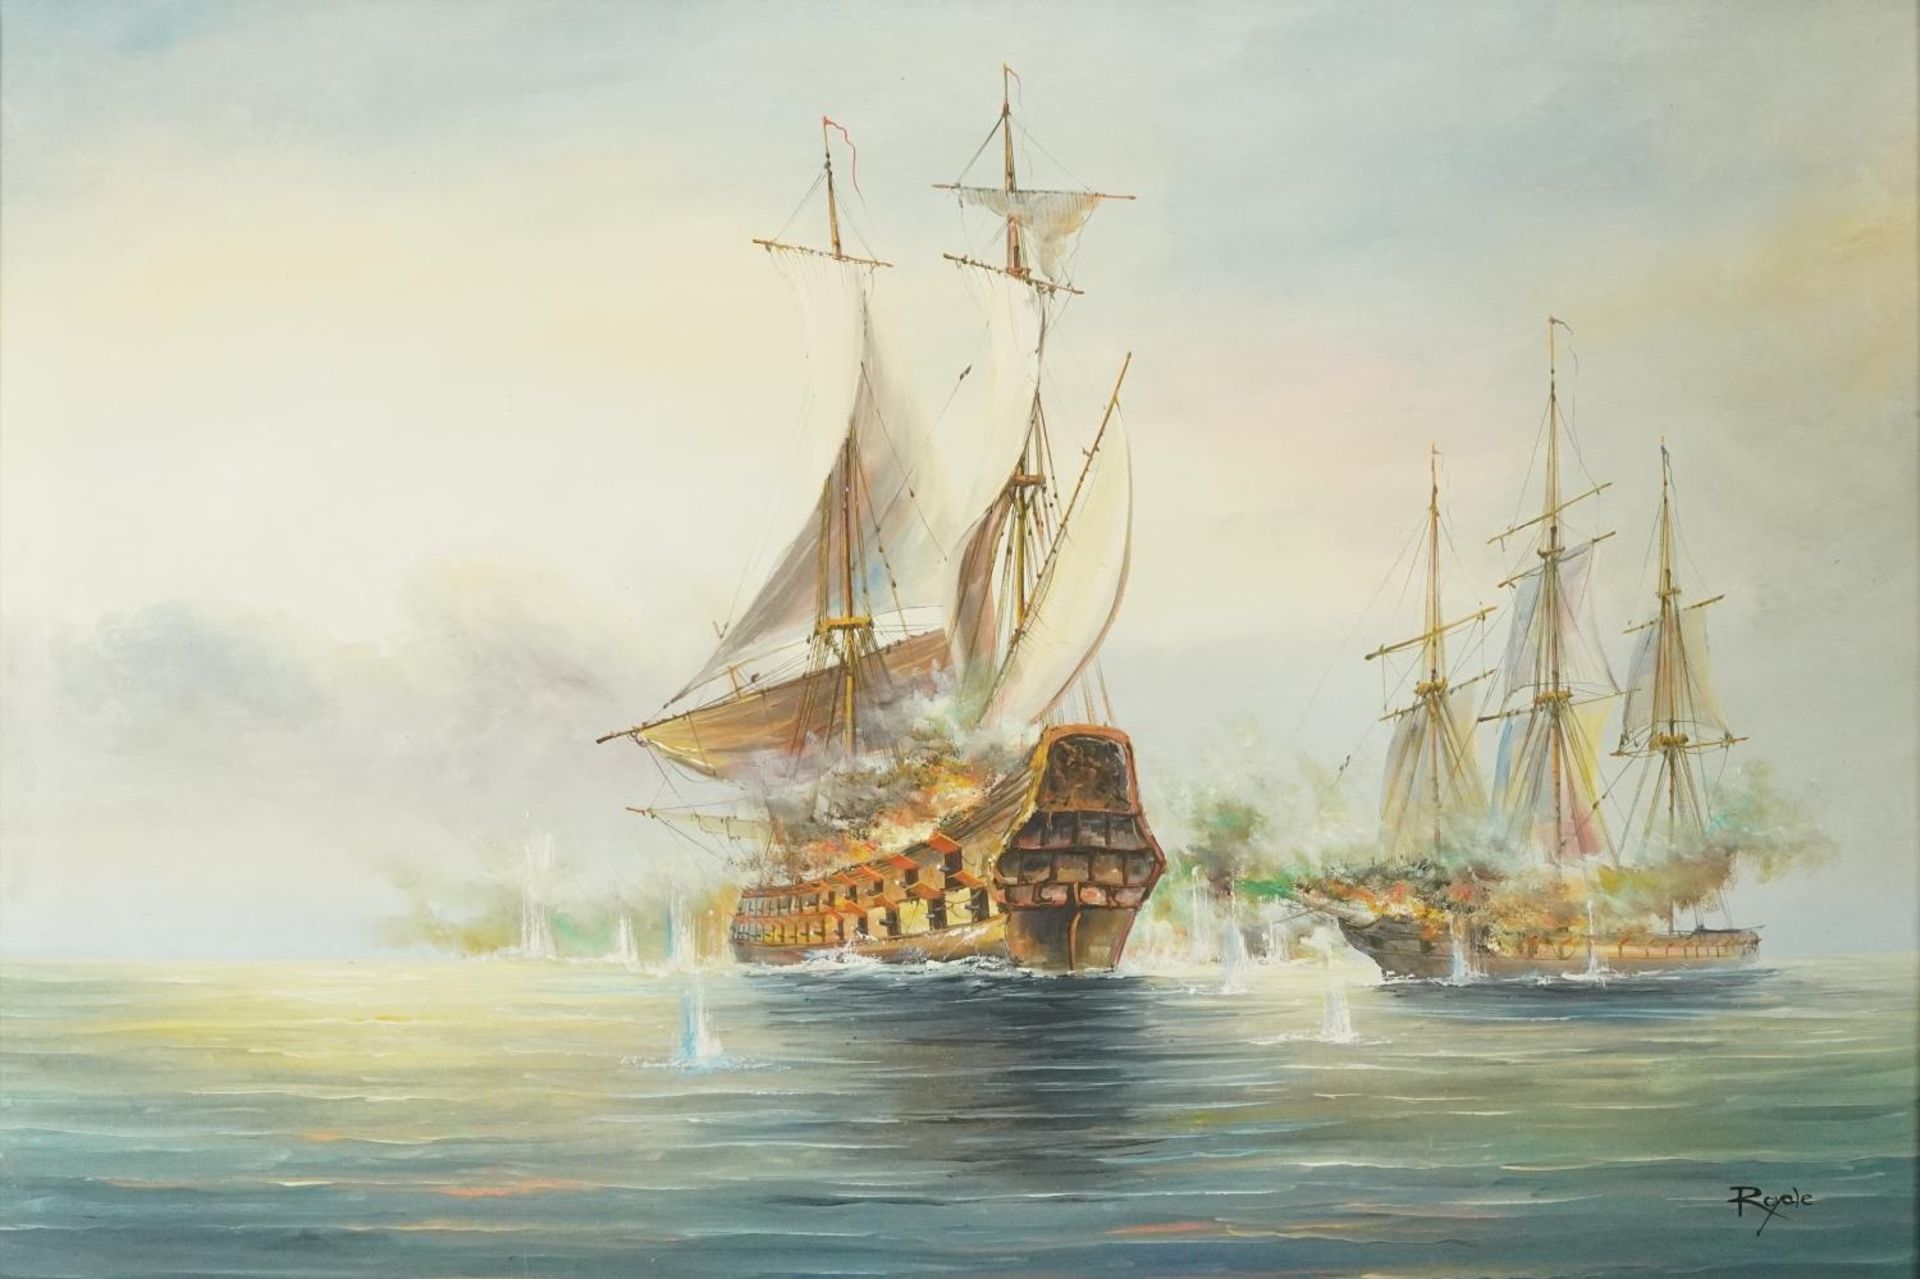 Royale - Men-O-War, Naval interest oil on canvas, framed, 90cm x 60cm excluding the frame